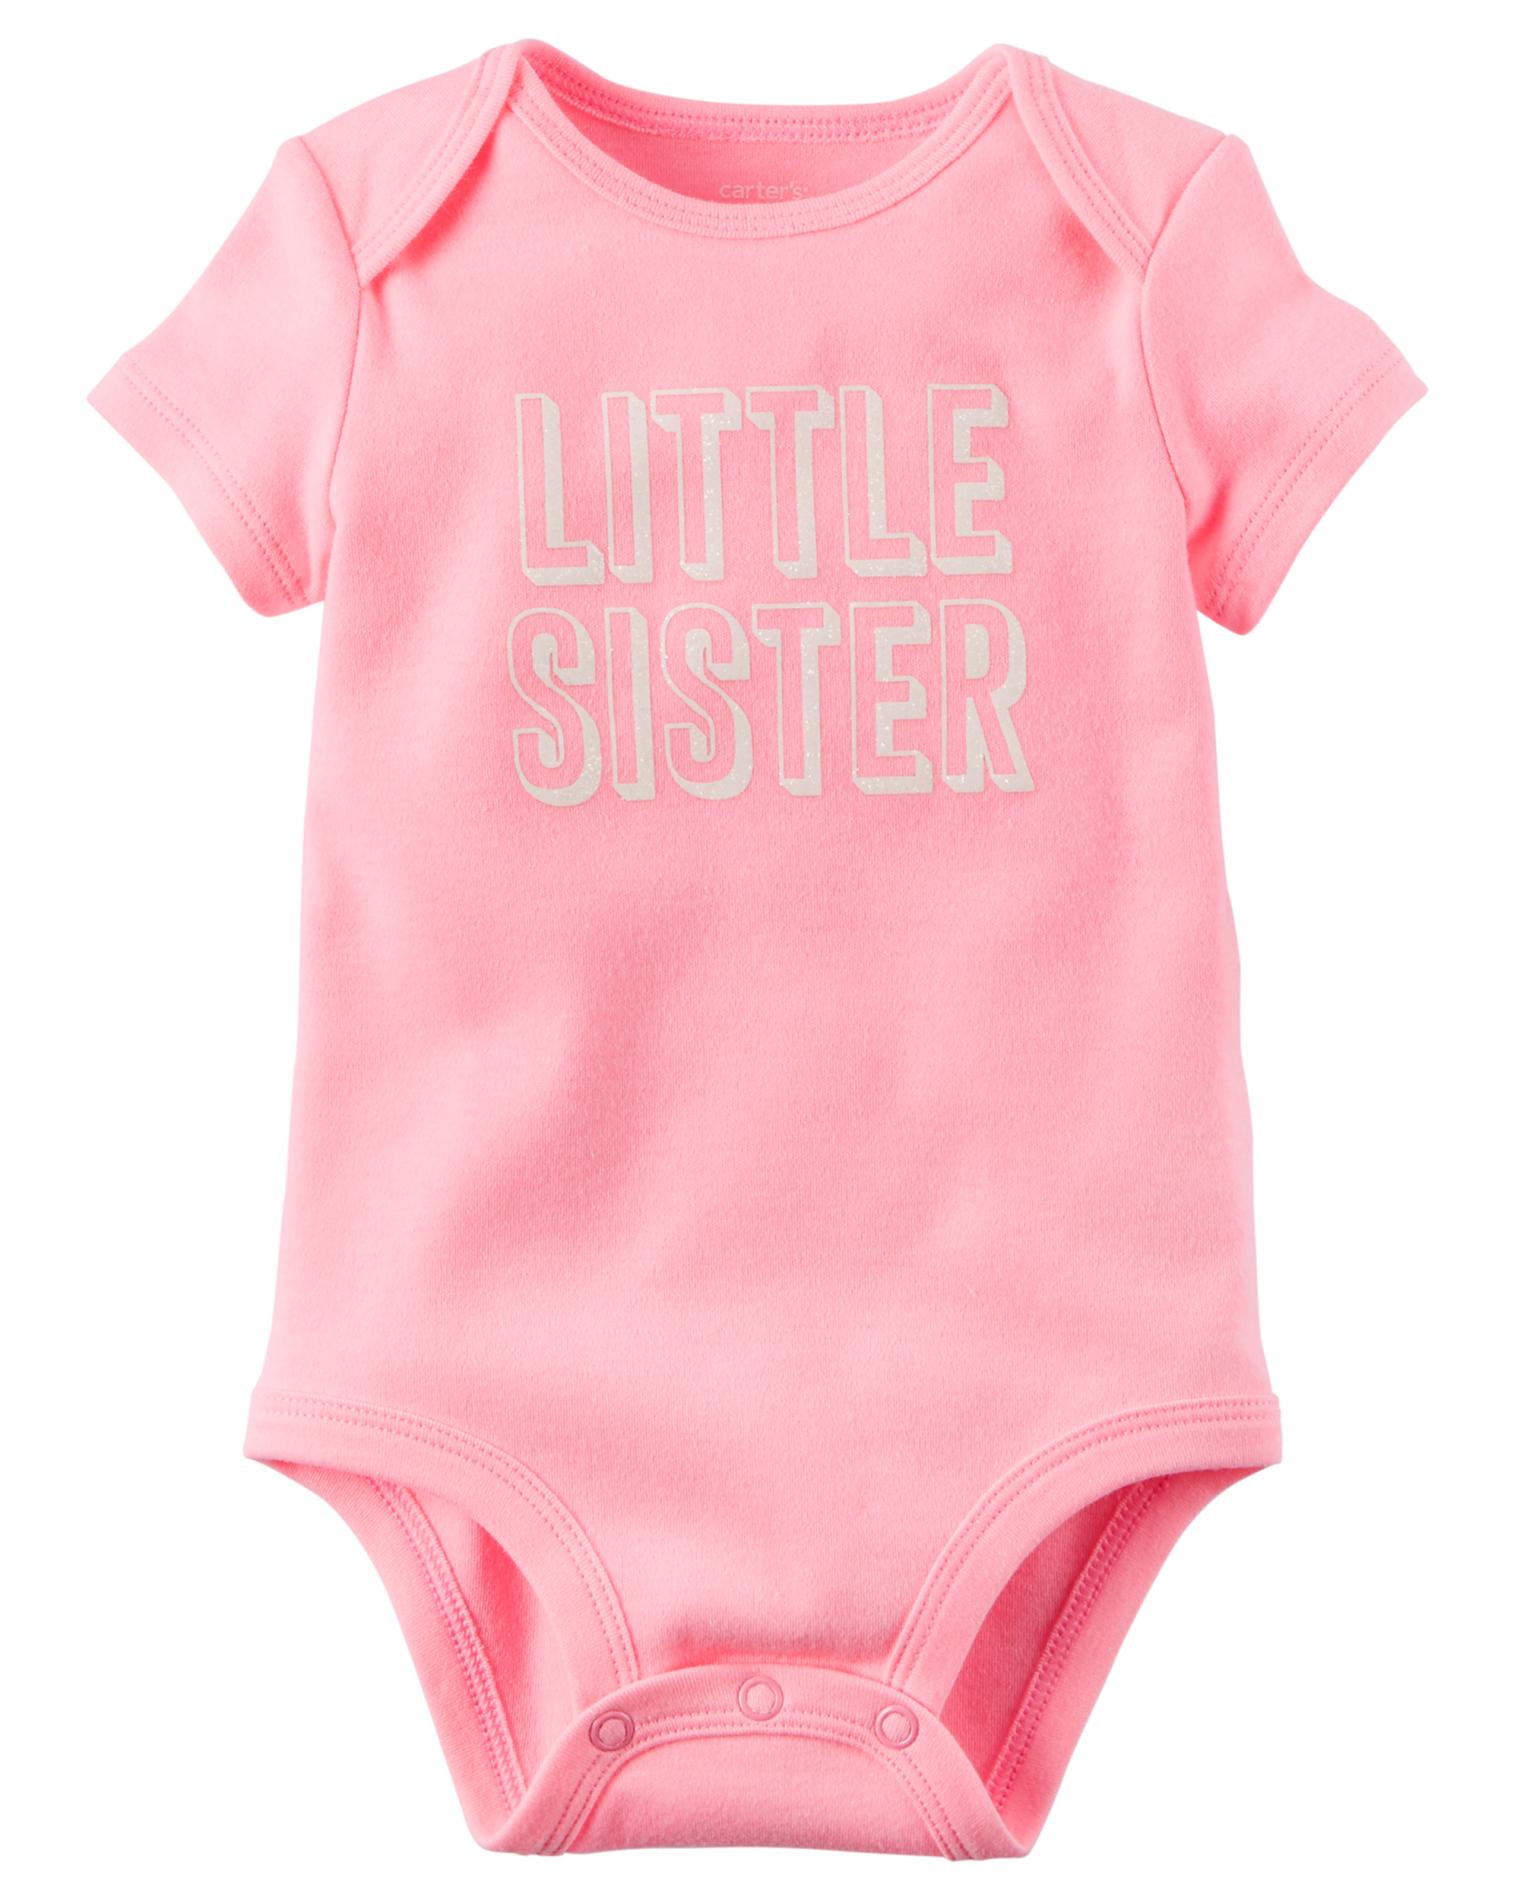 Carter's Newborn & Infant Girls' Bodysuit - Little Sister